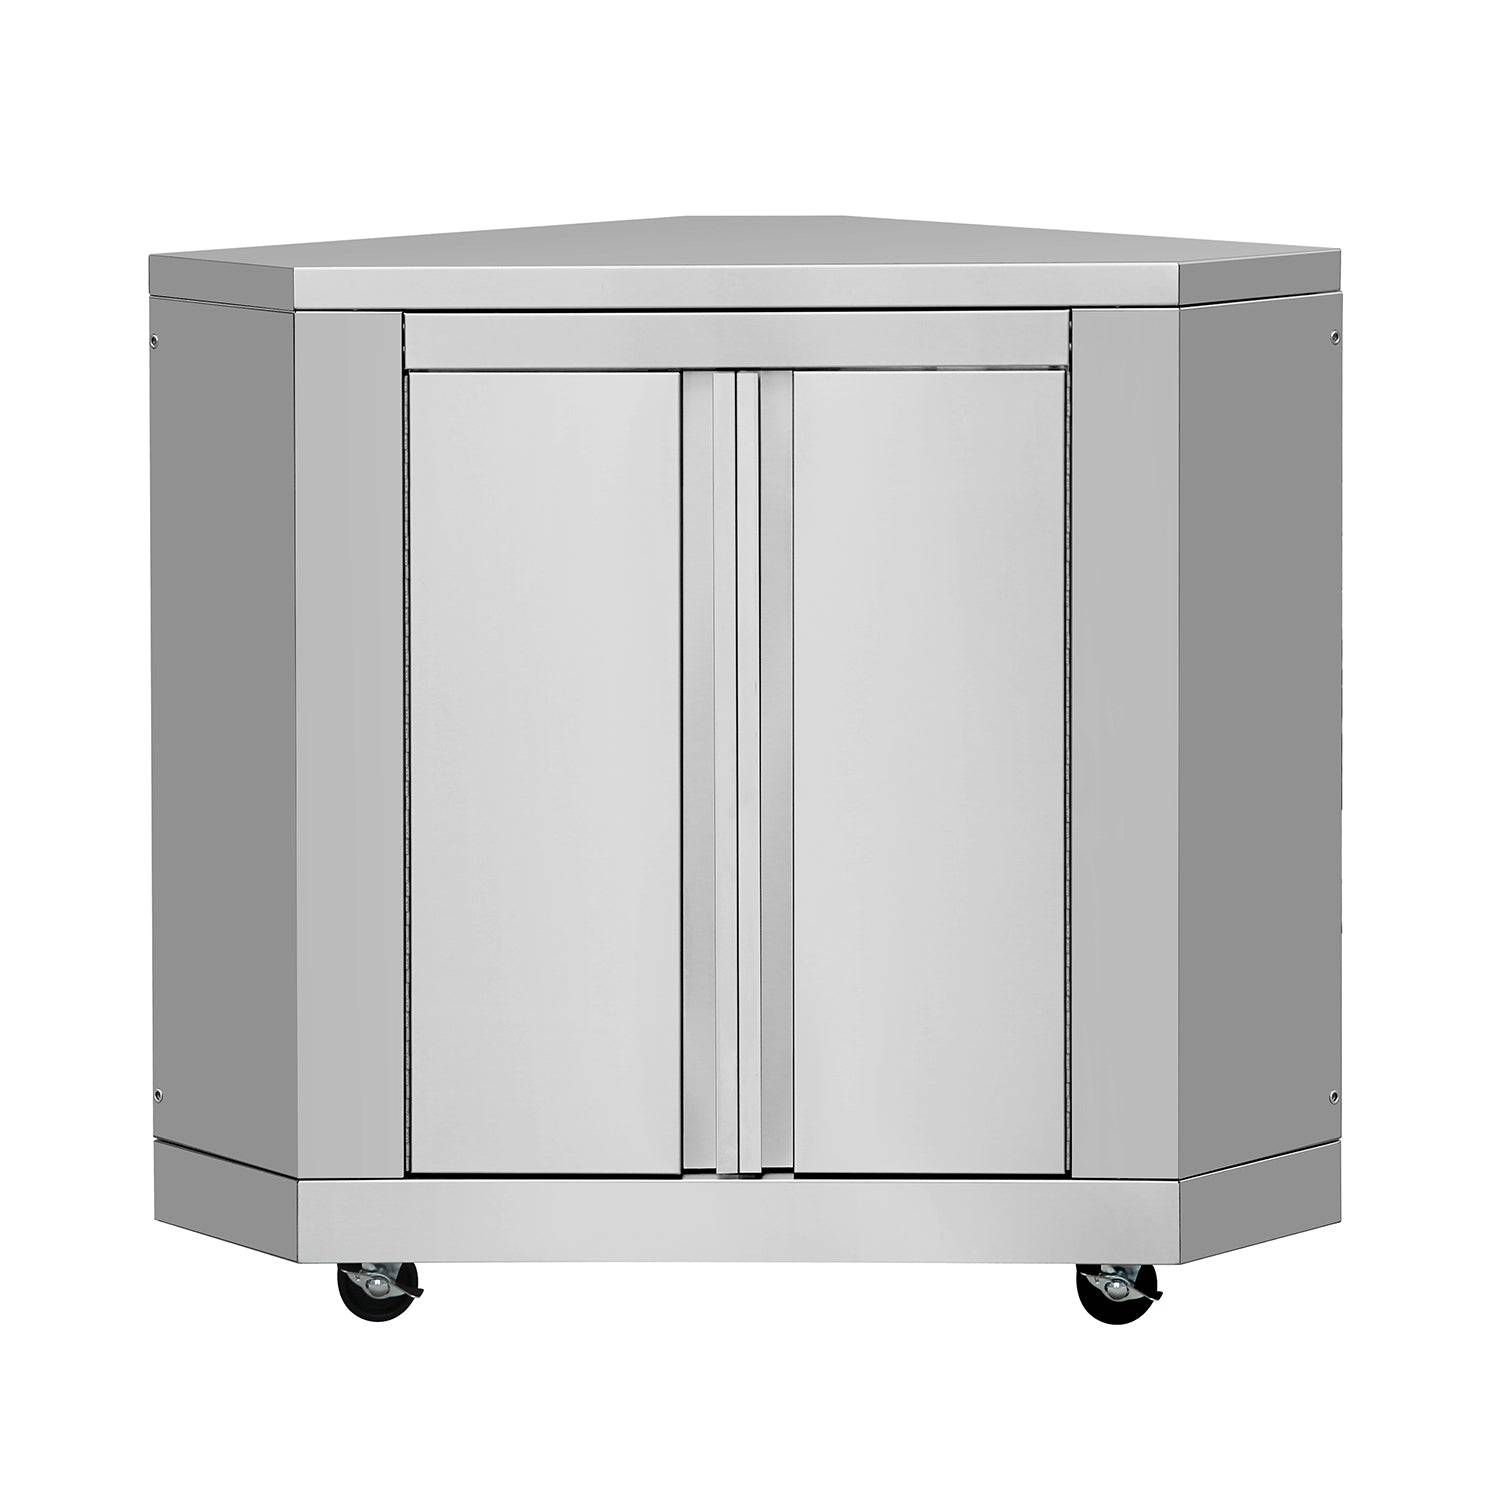 Fobest Outdoor Kitchen Stainless Steel Corner Cabinet